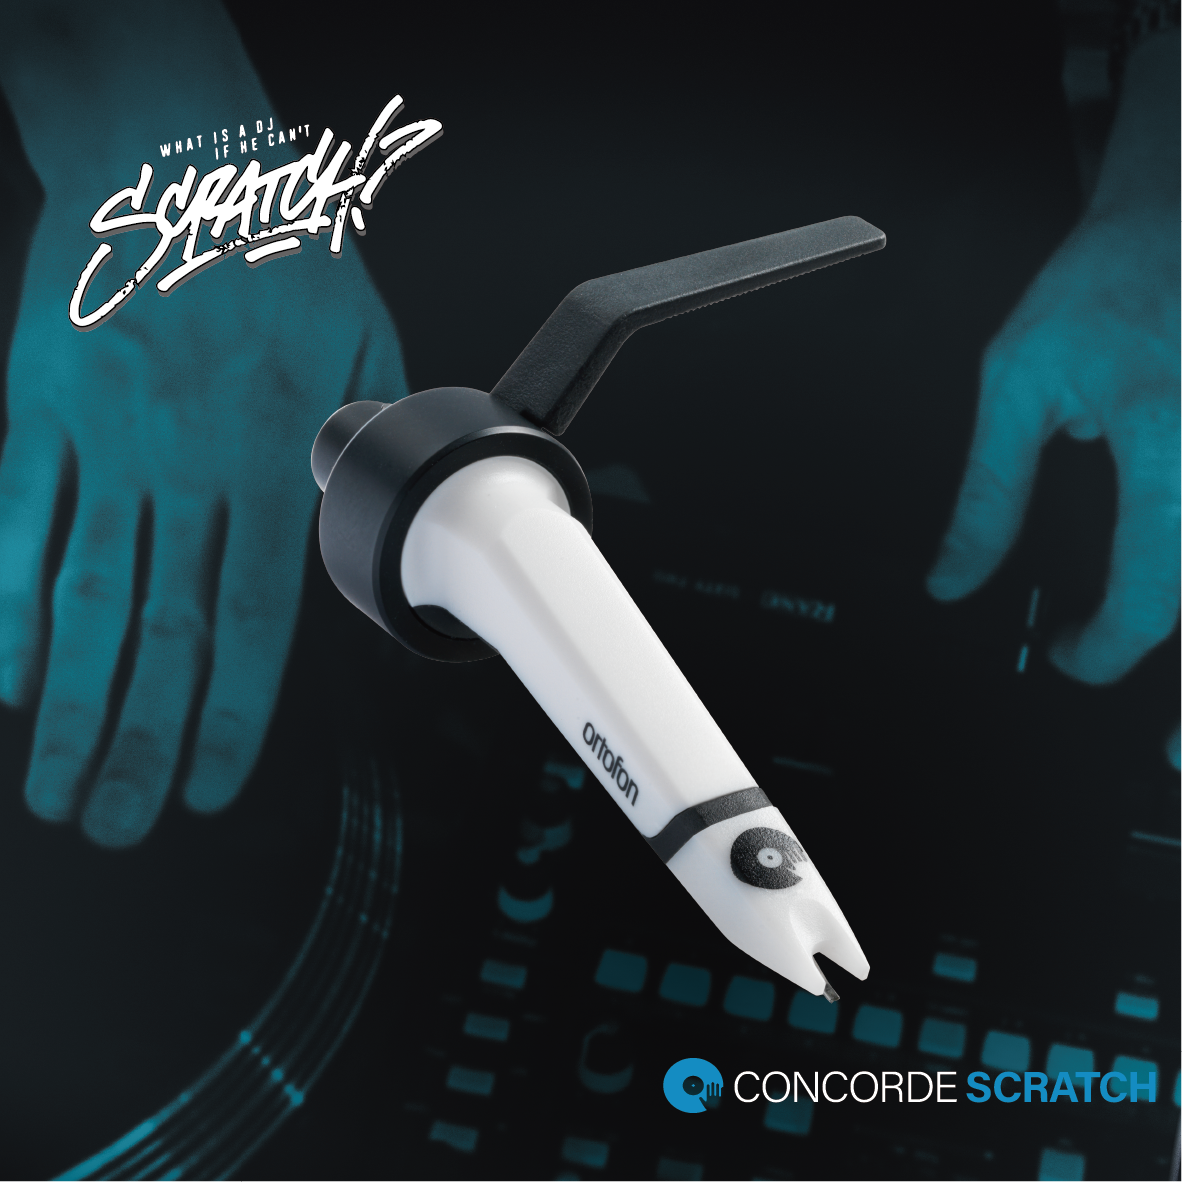 CONCORDE MKⅡ SCRATCH SINGLE – Ortofon OFFICIAL ONLINE SHOP